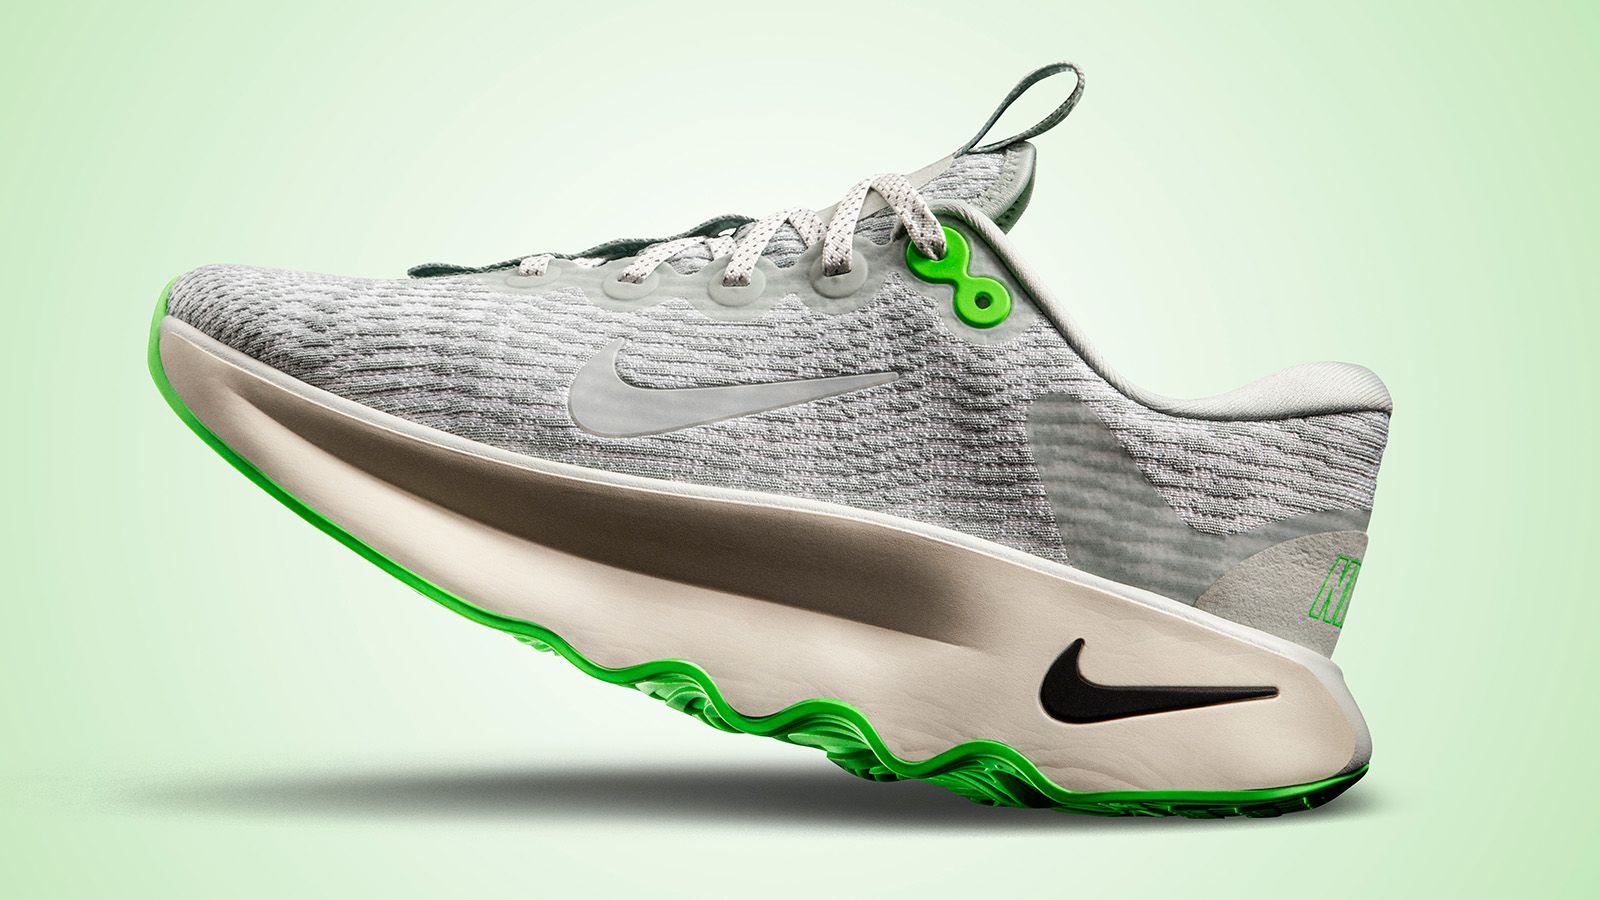 aparato primero Medalla Nike Motiva shoe review: runners for women's feet | CNN Underscored